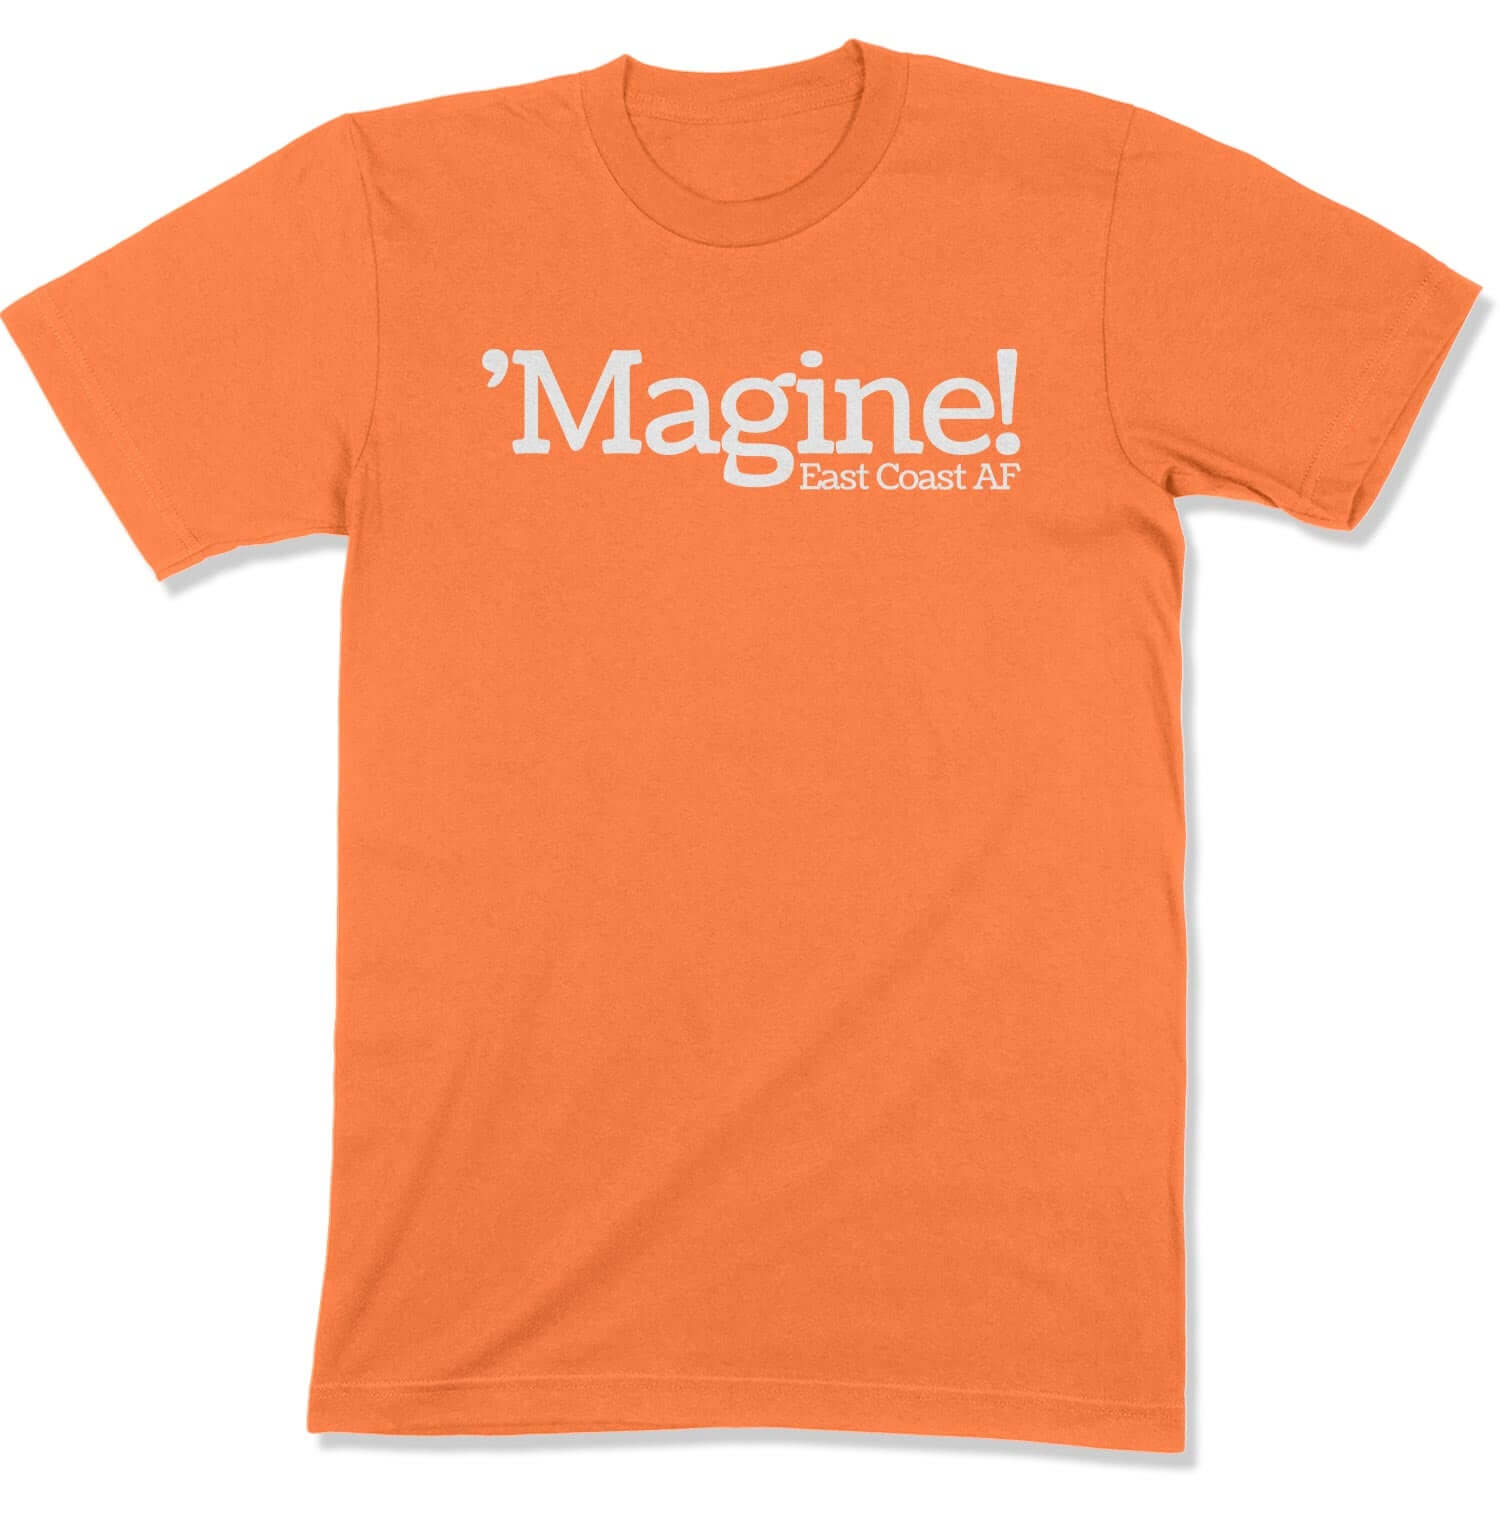 'Magine! Unisex T-Shirt in Color: Burnt Orange - East Coast AF Apparel